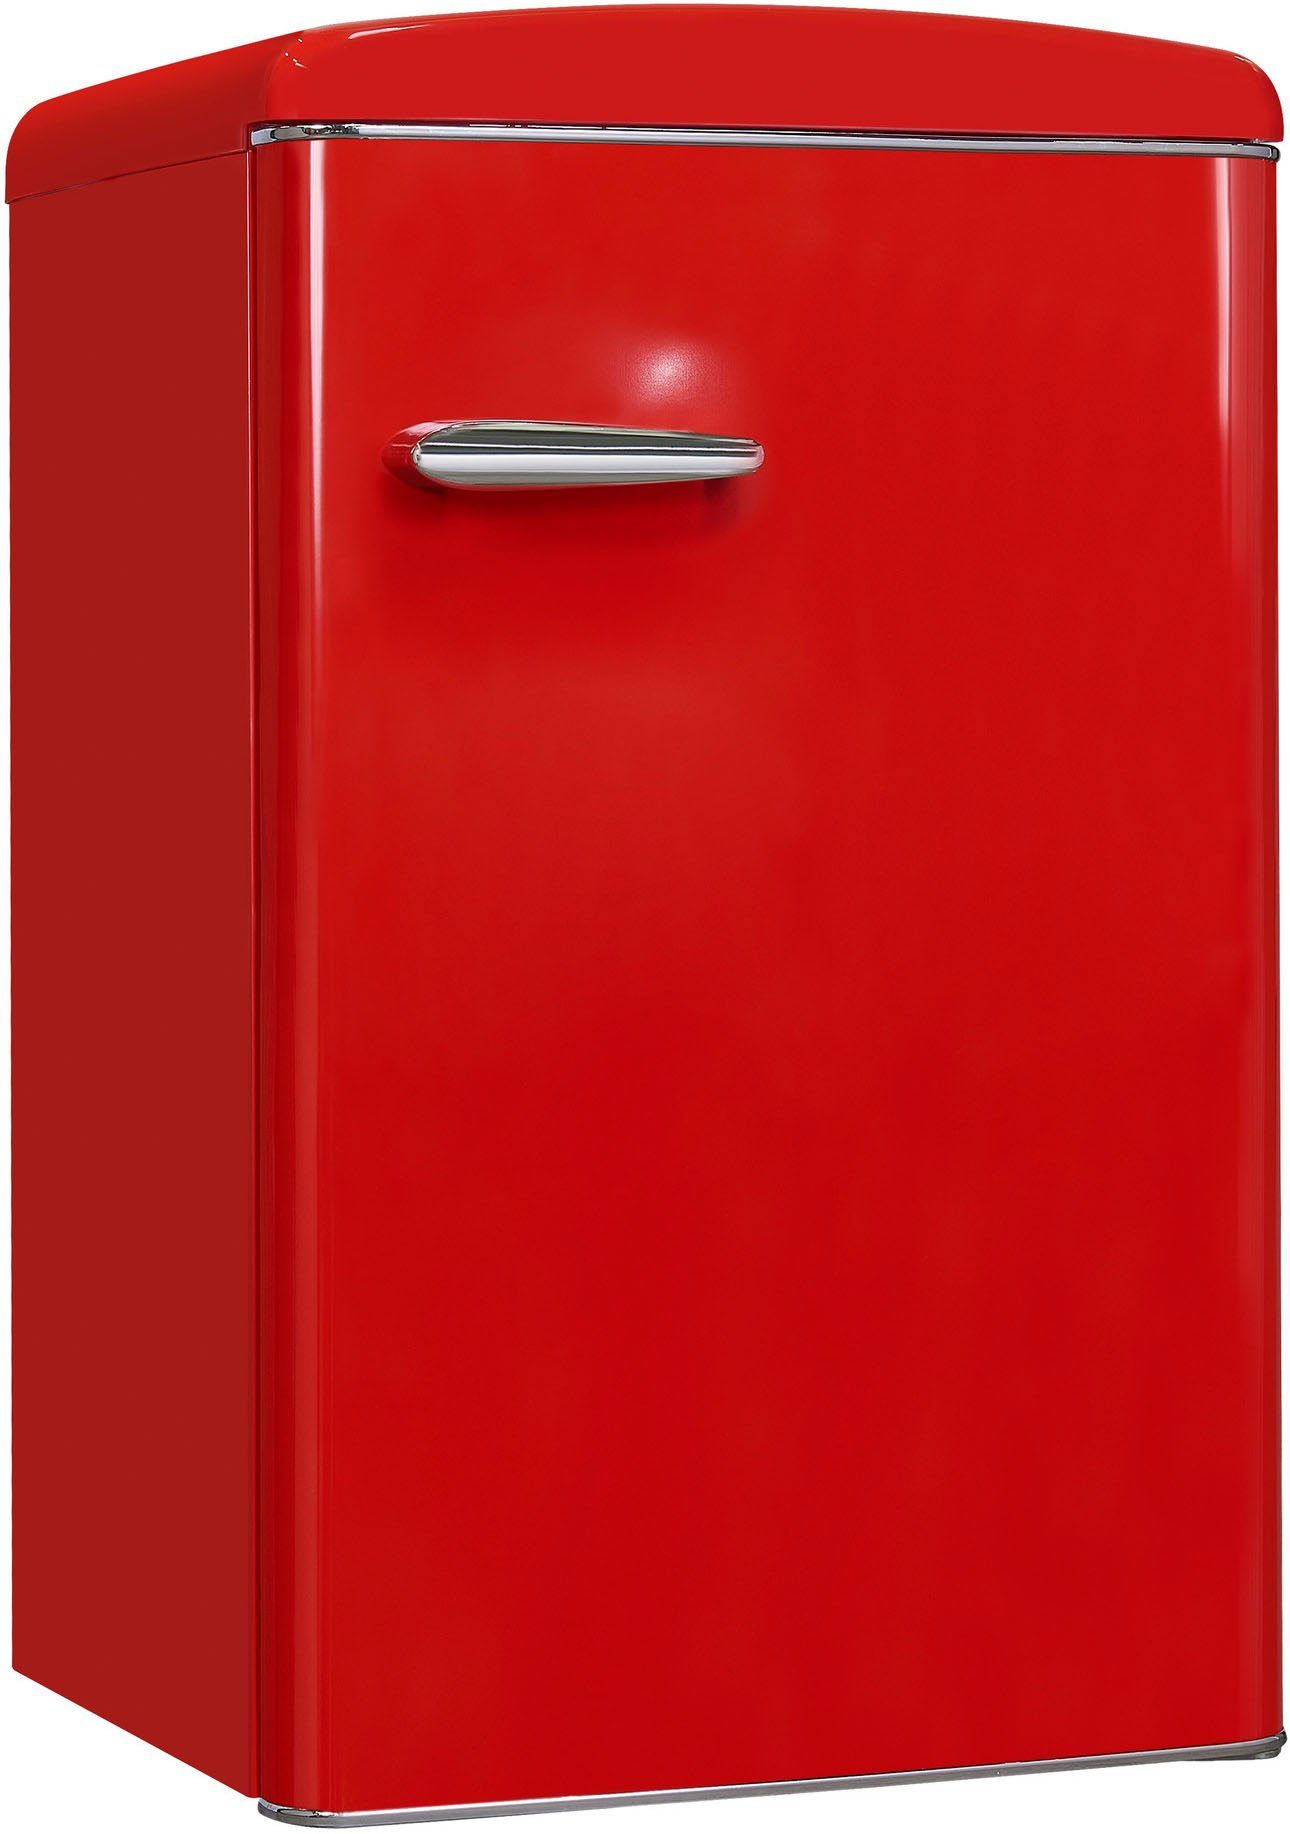 89,5 RKS120-V-H-160F rot, cm exquisit 55 hoch, breit cm Kühlschrank